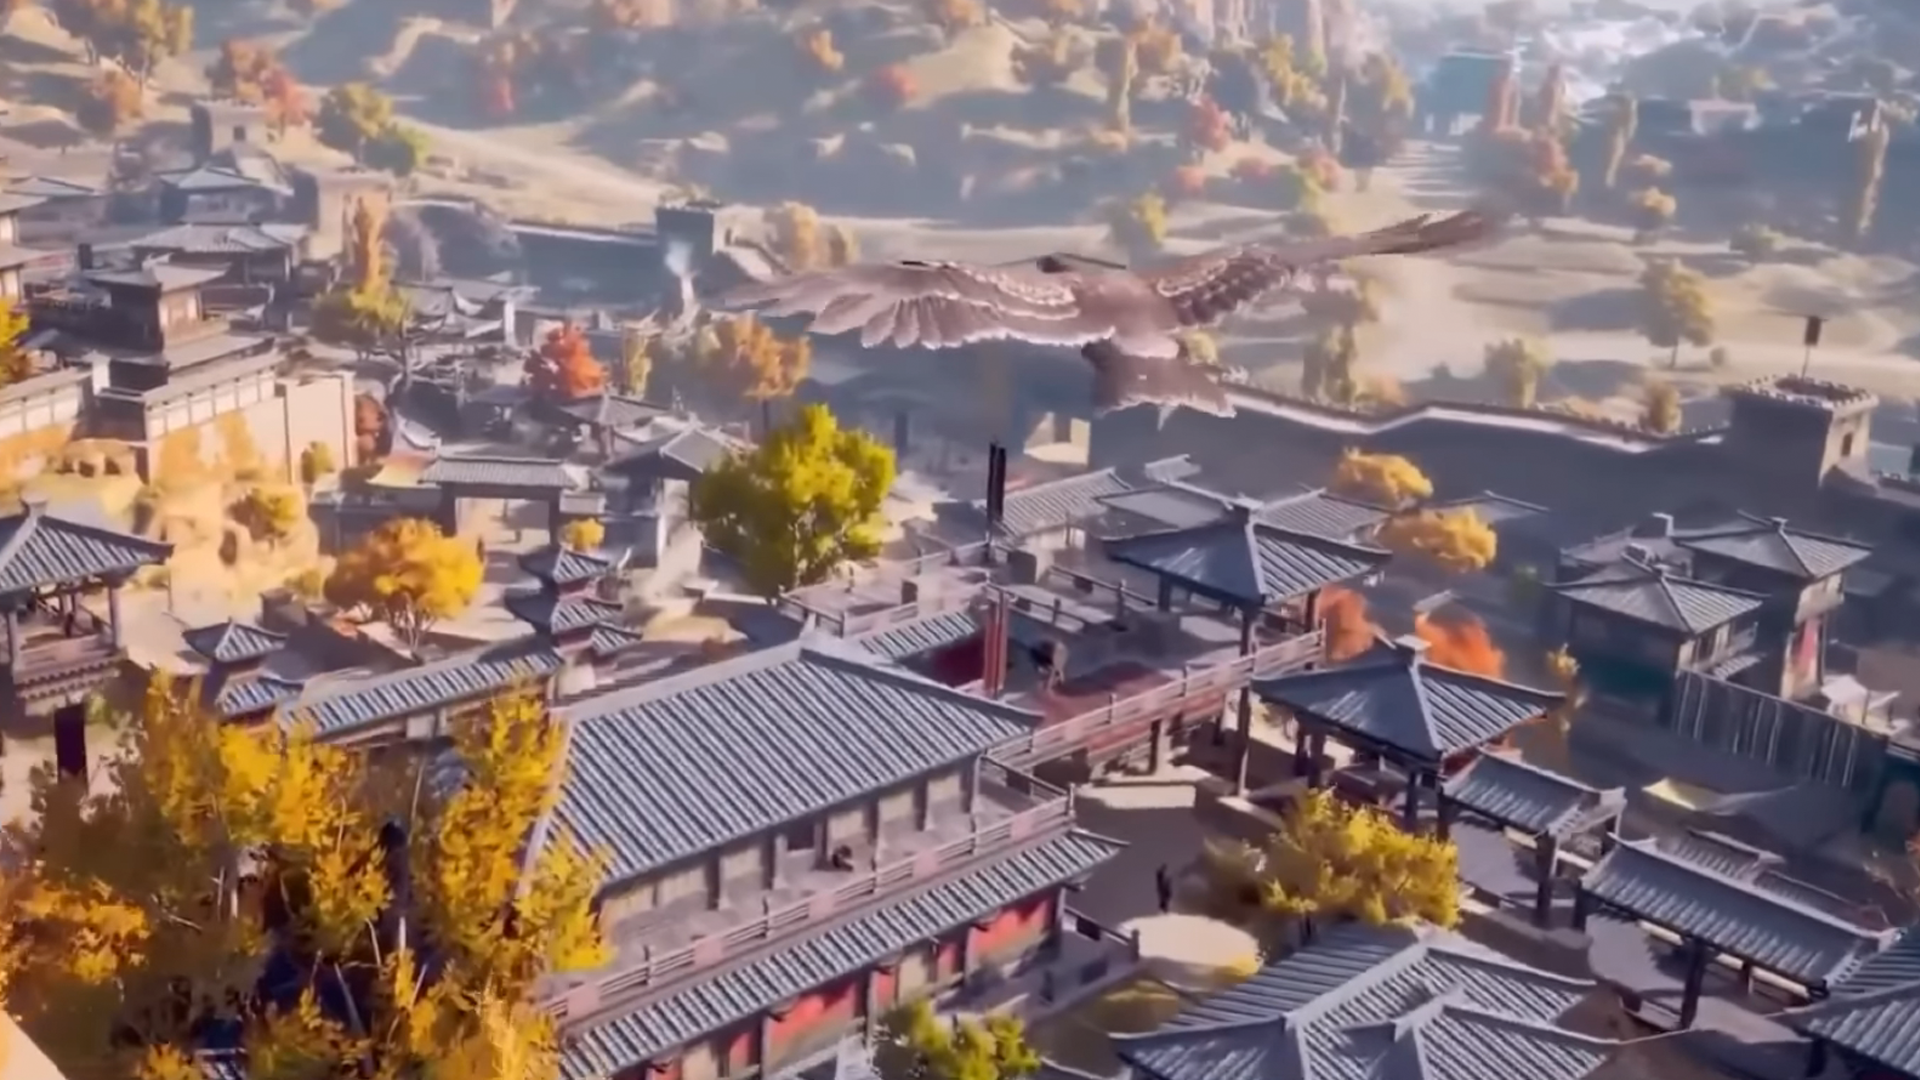 Assassin's Creed Codename Jade ganha data de primeiro beta fechado